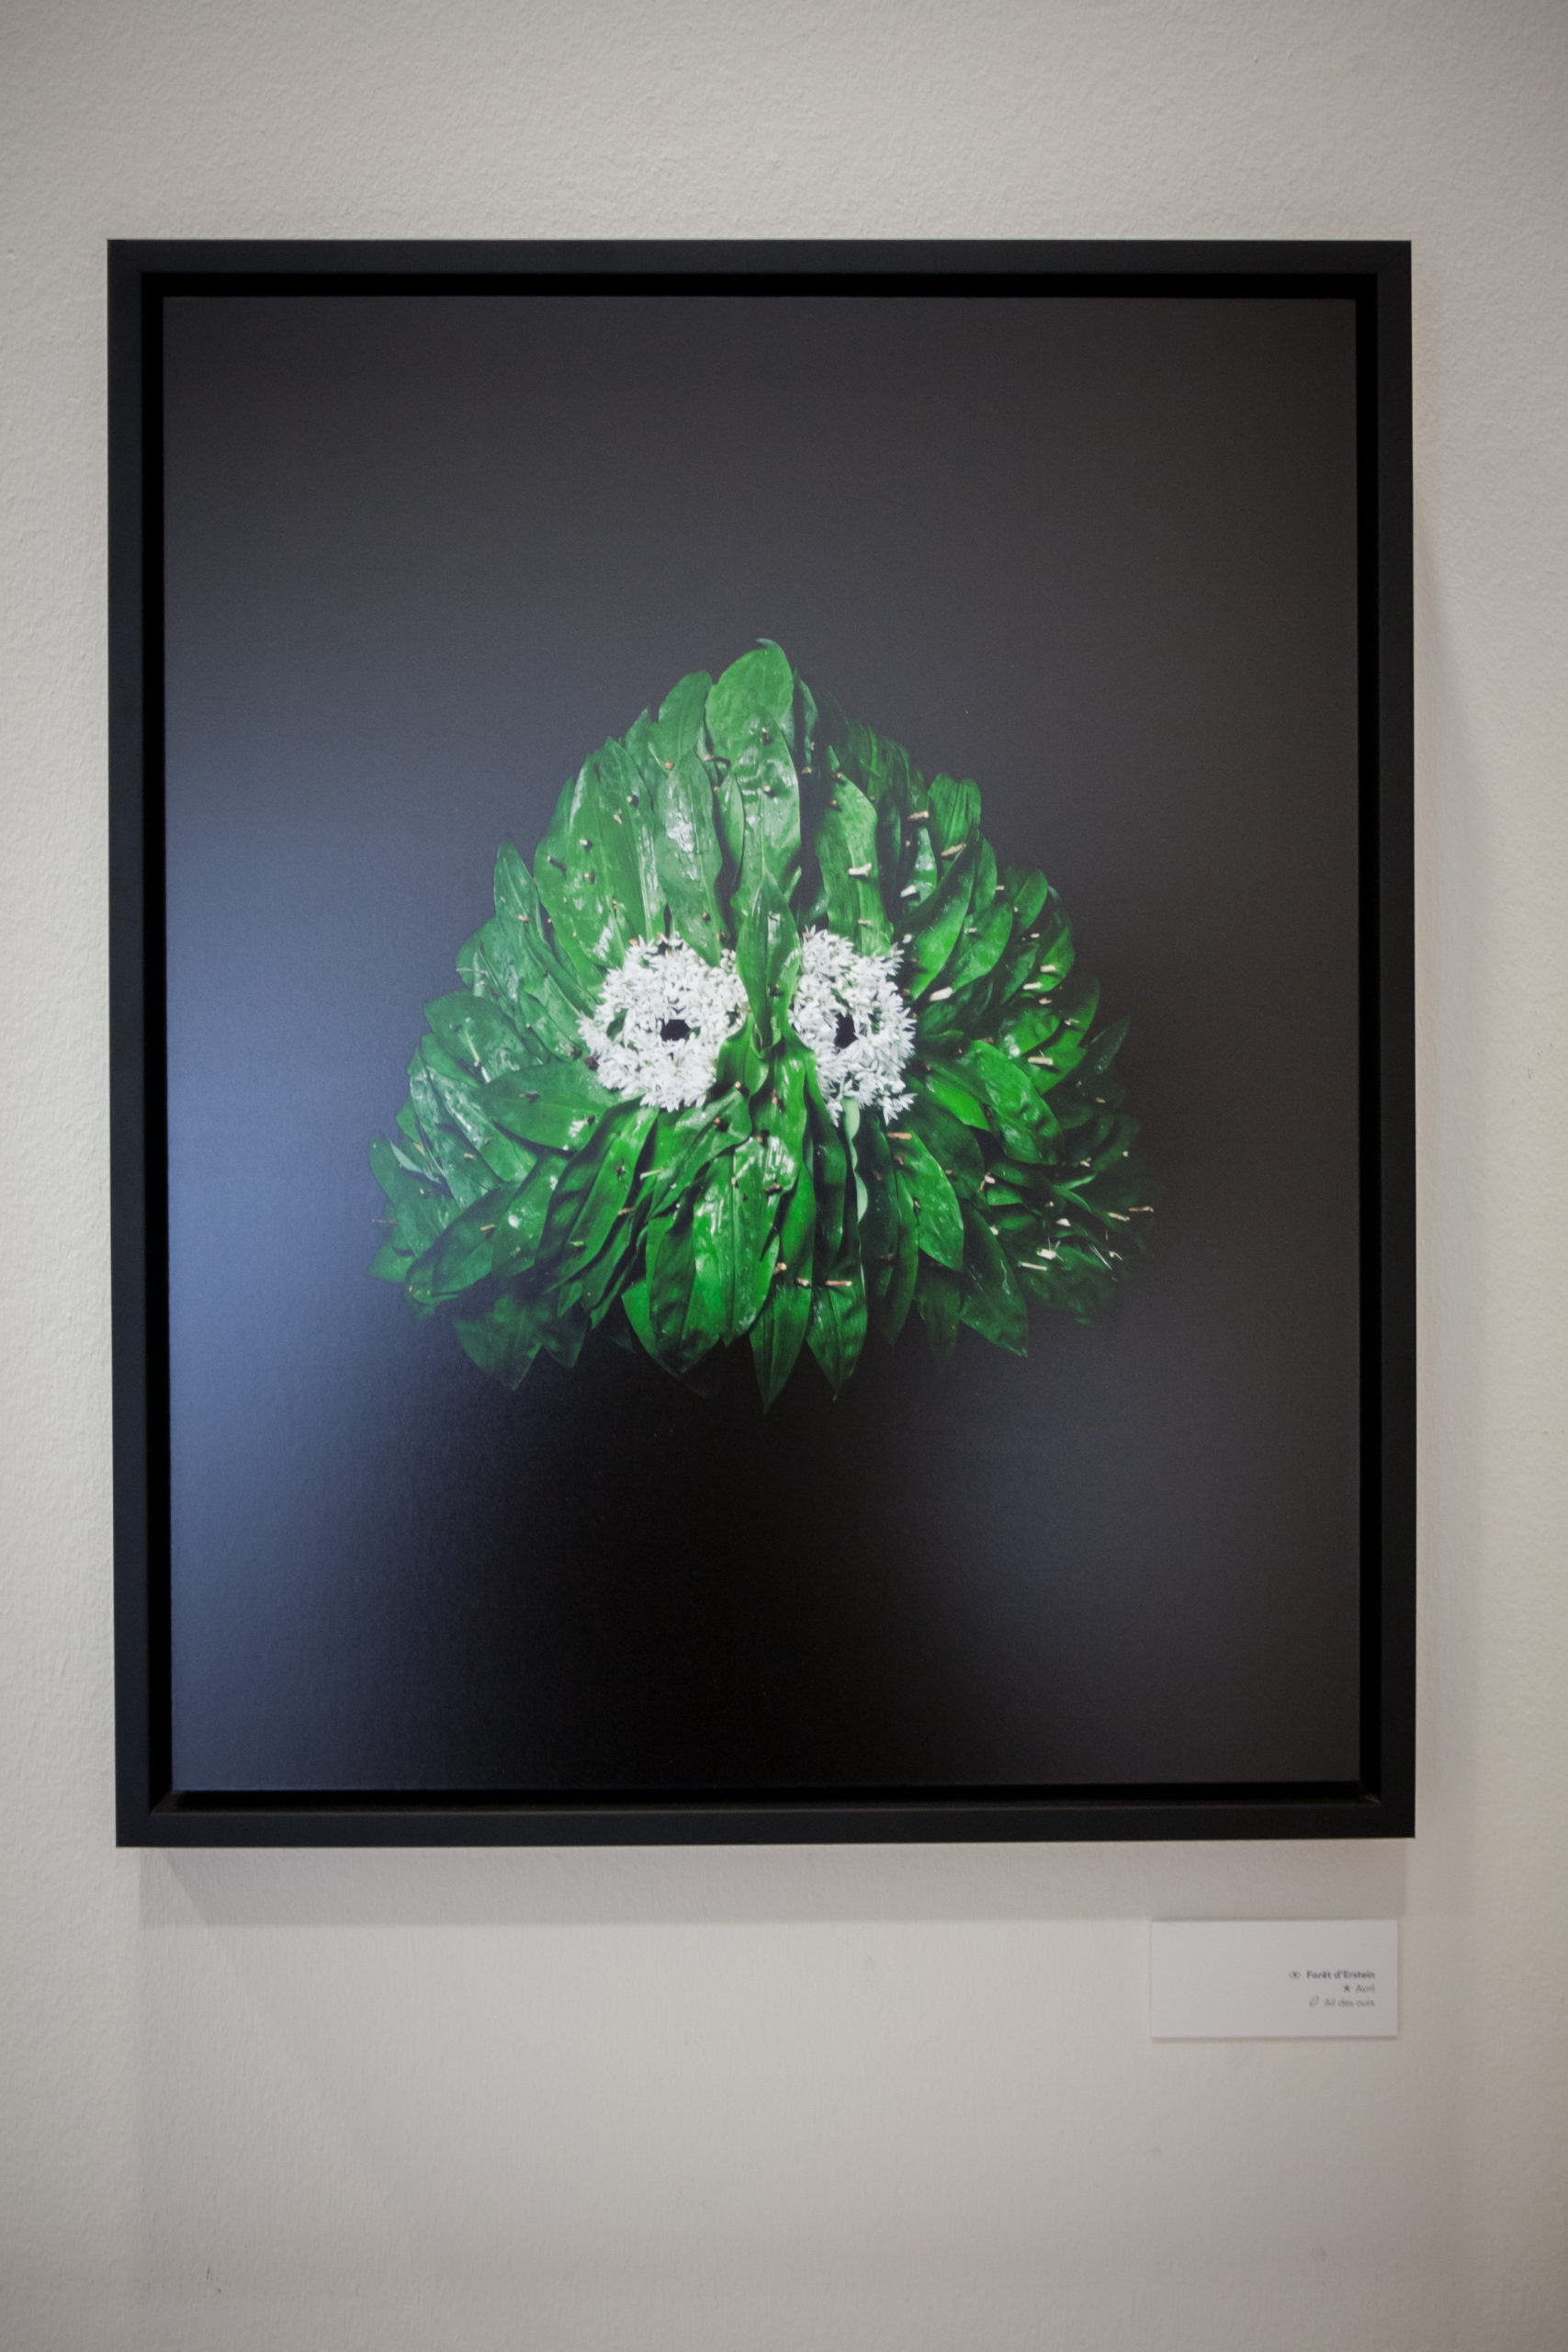 Photographie de masque du projet « Être(s » réalisé par l'artiste plasticien Hugo Mairelle et le photographe Vincent Muller